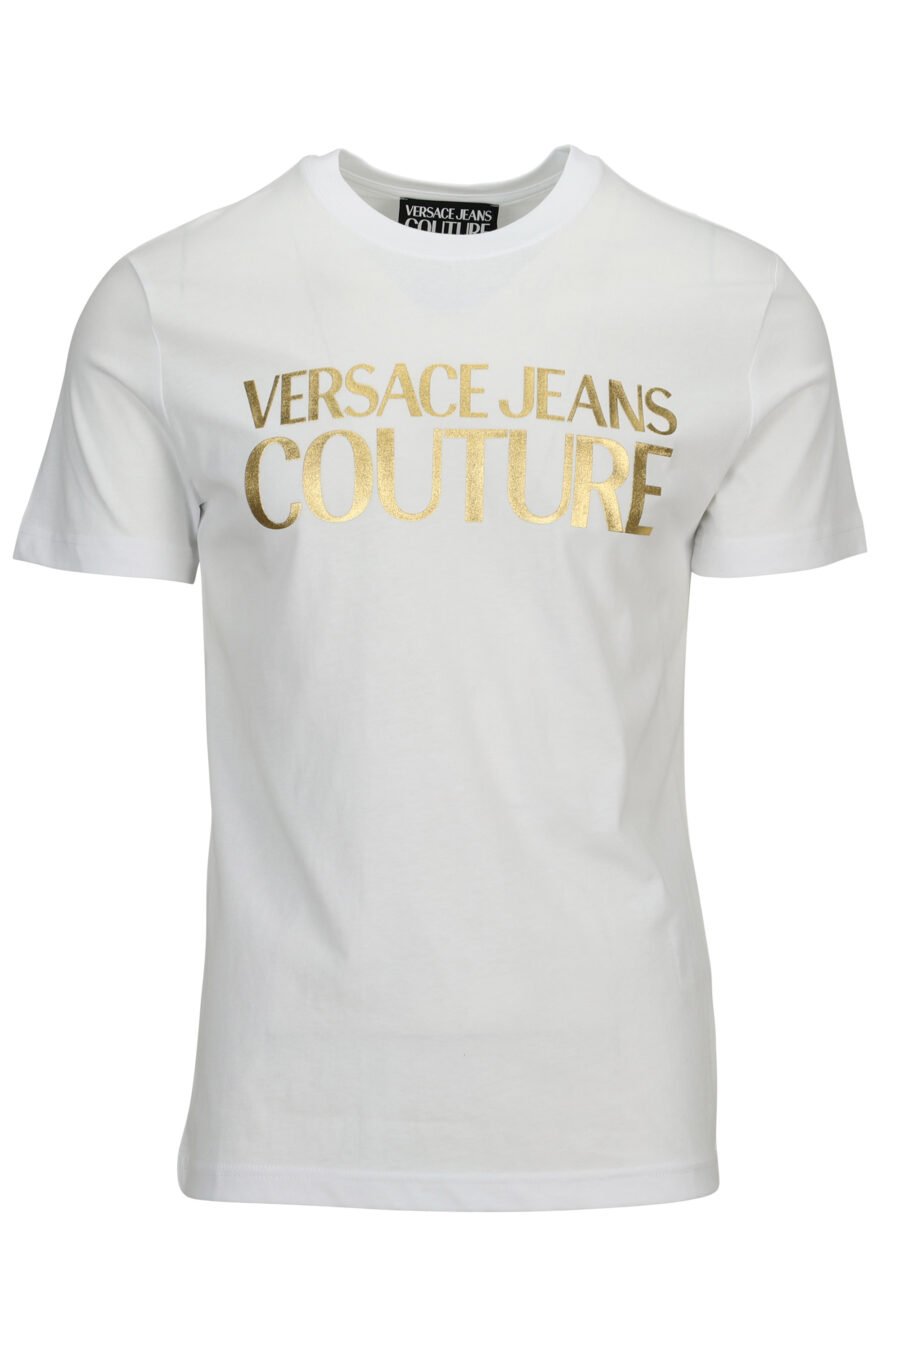 T-shirt branca com maxilogue dourado brilhante - 8052019579987